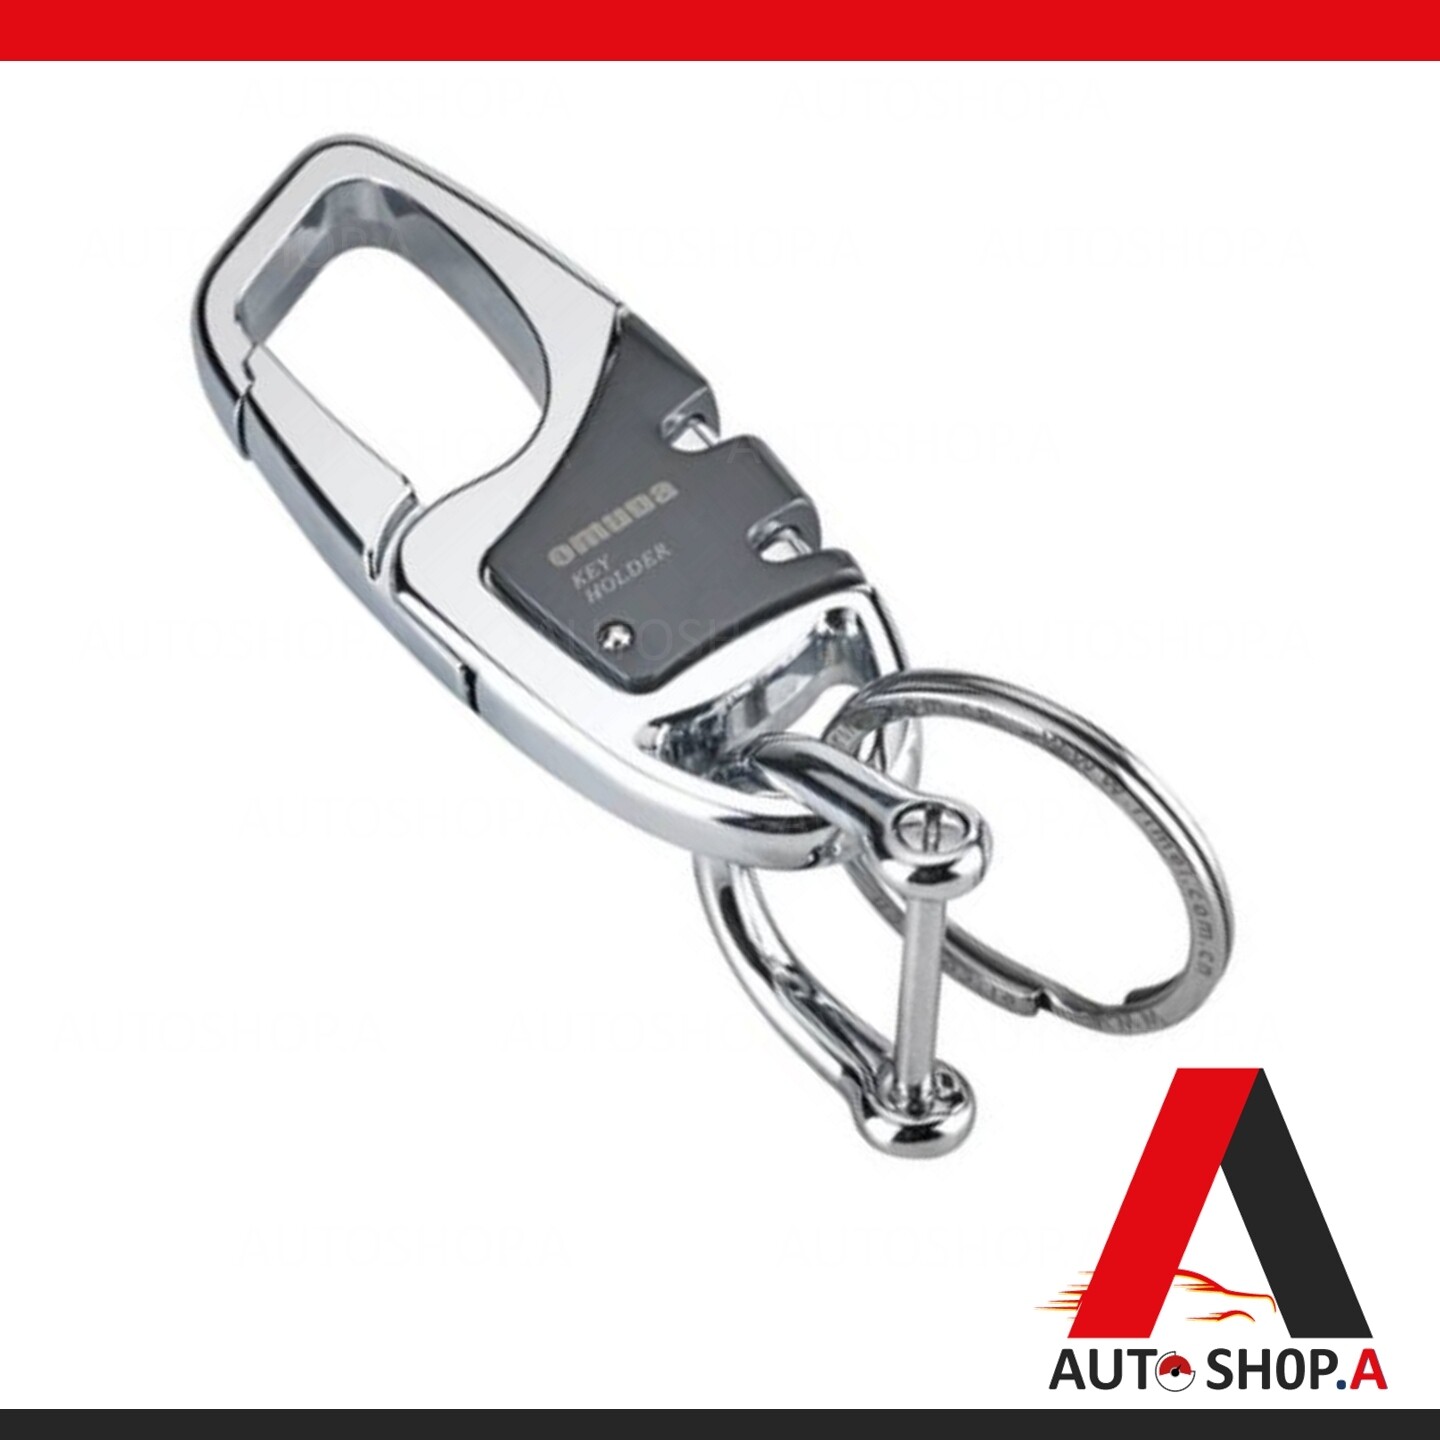 [รับประกันสินค้า] OMUDA (สีเงิน) พวงกุญแจ พวงกุญแจรถยนต์ พวงกุญแจแฟชั่น พวงกุญแจบ้าน พวงกุญแจโลหะ